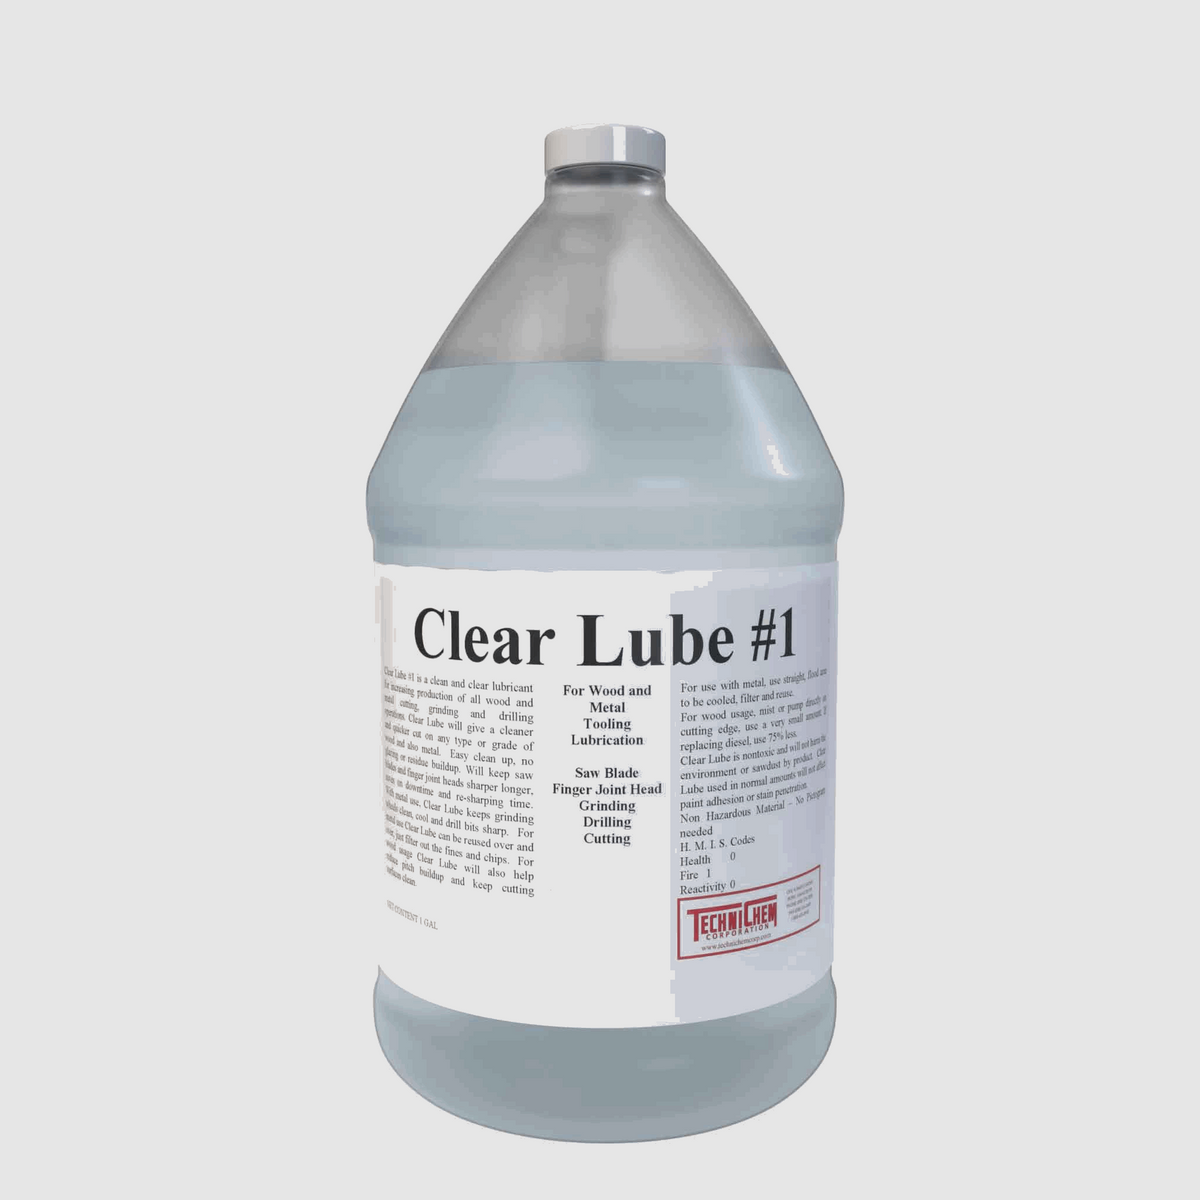 BLADE CLEAN, Saw Blade Cleaner — TECHNICHEM